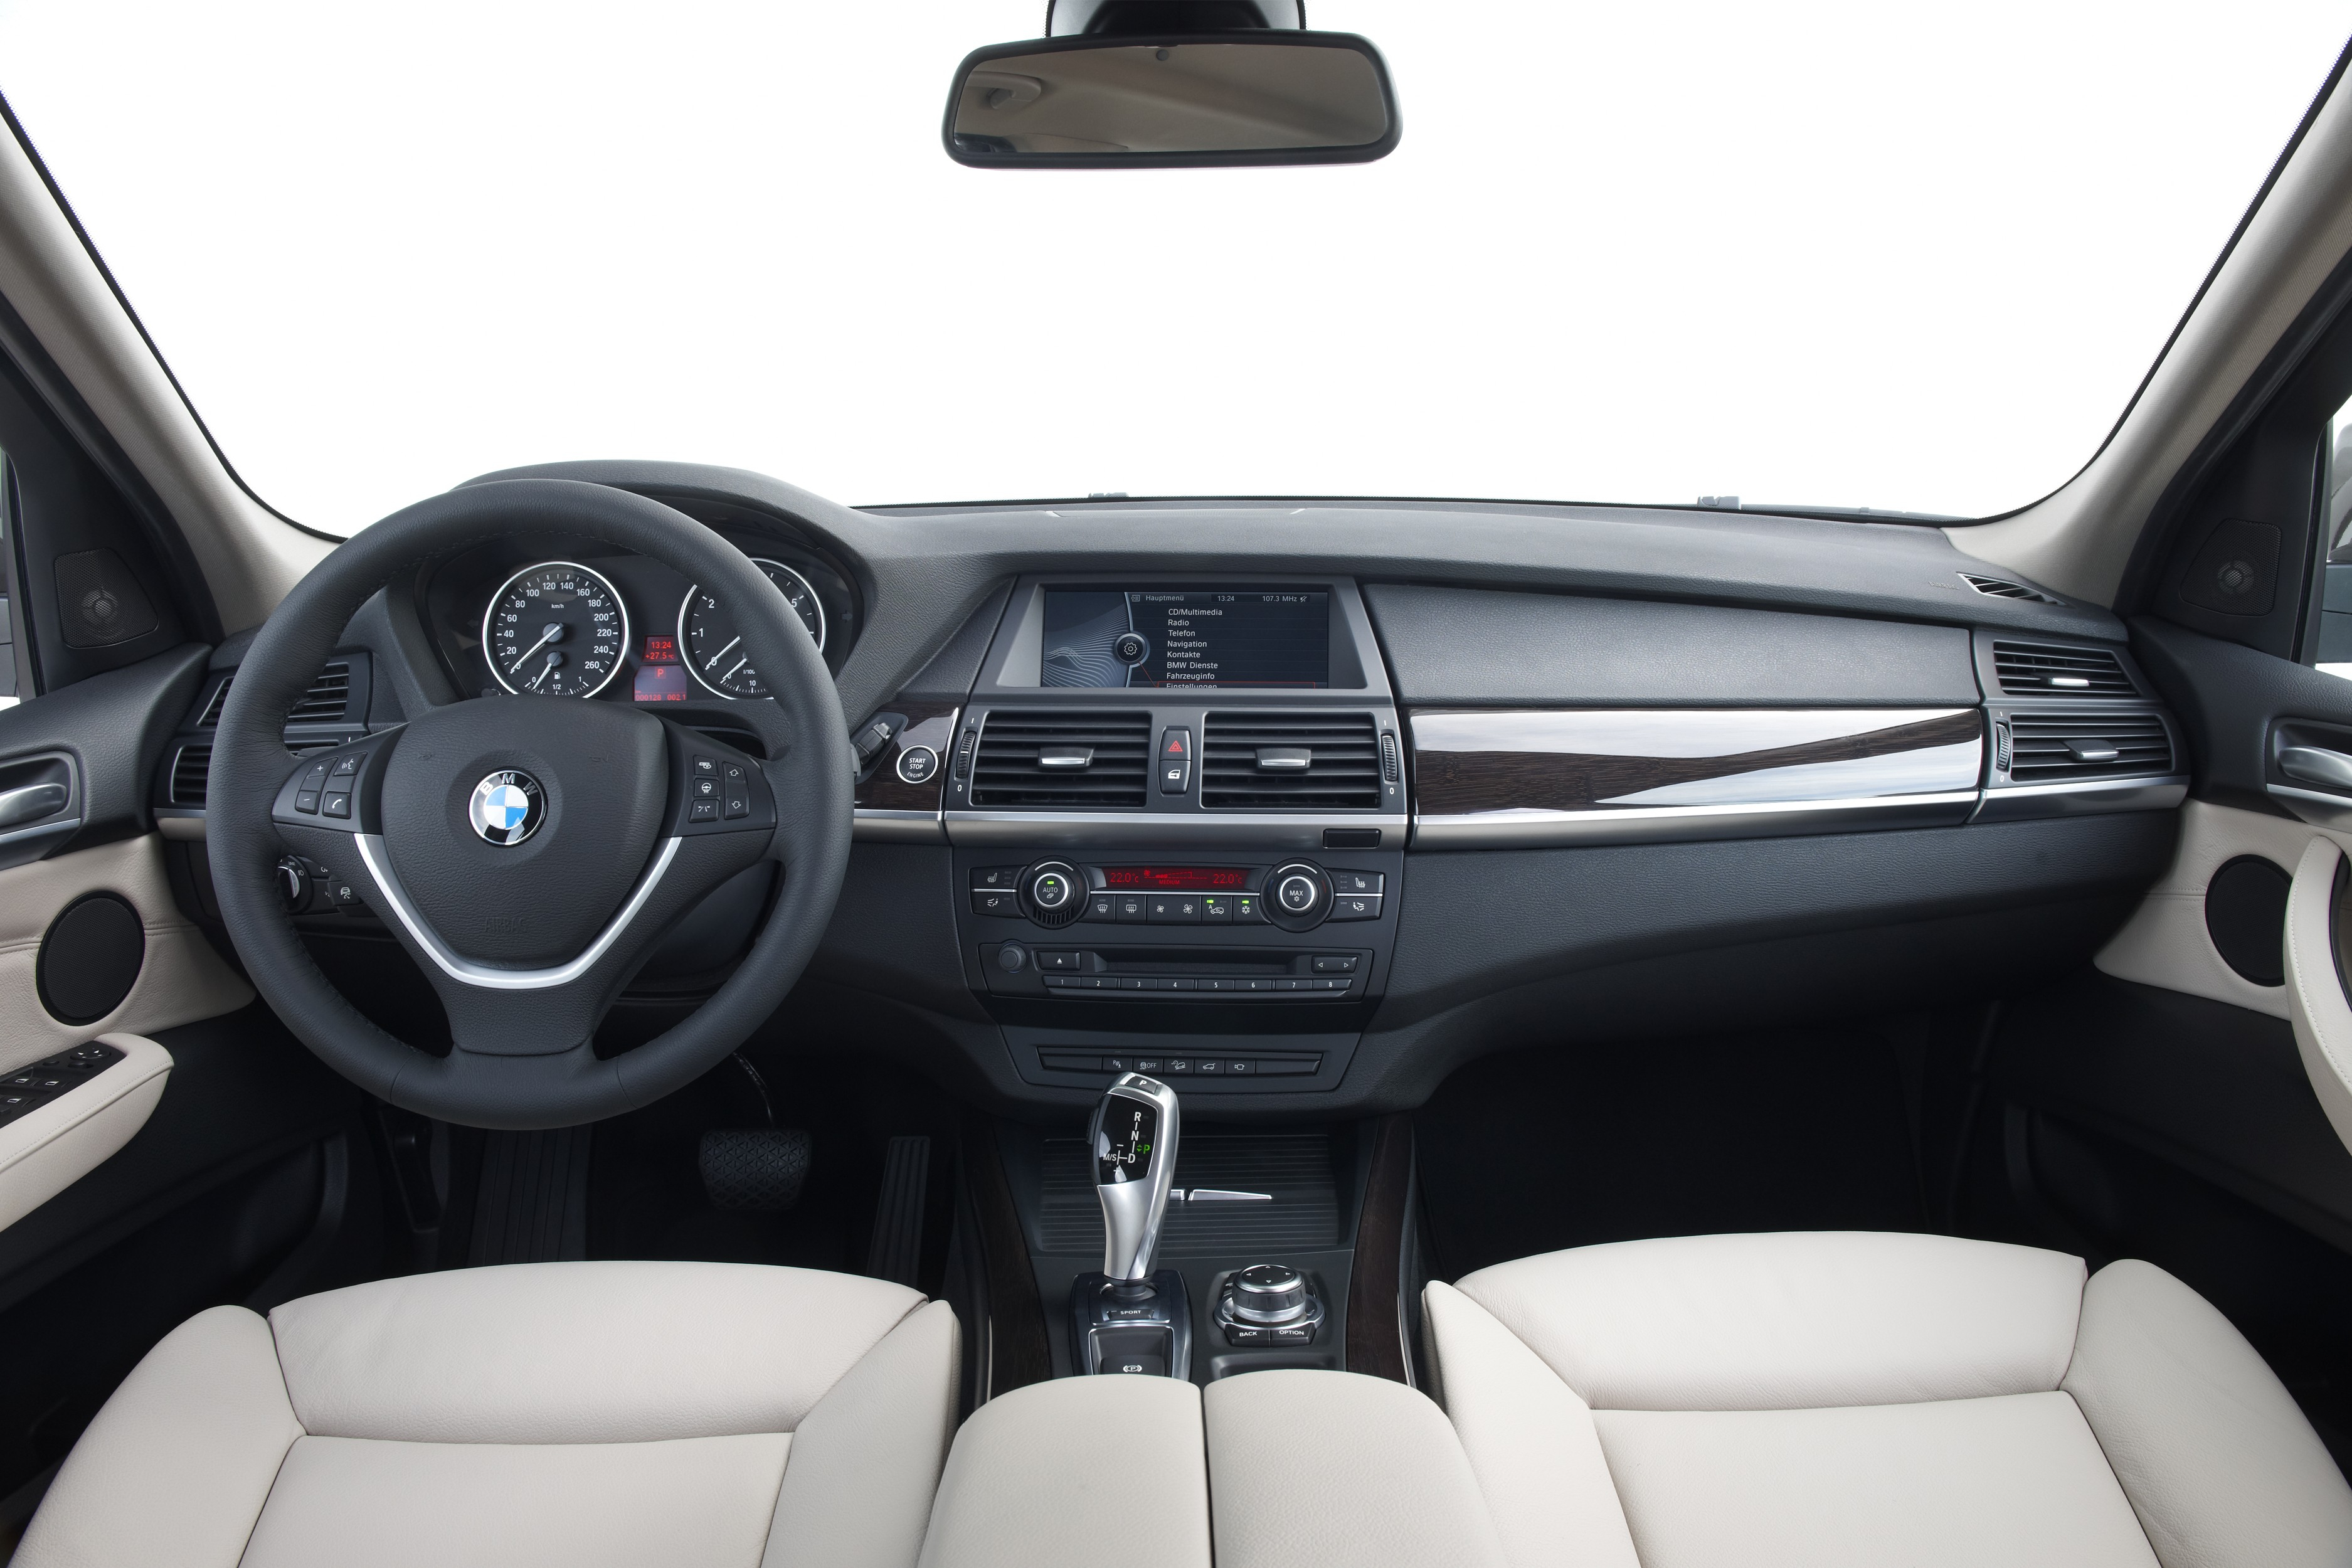 Торпедо бмв. BMW x5 Interior 2013. BMW x5 2011. BMW x5m 2011. BMW x5 e70 2010.